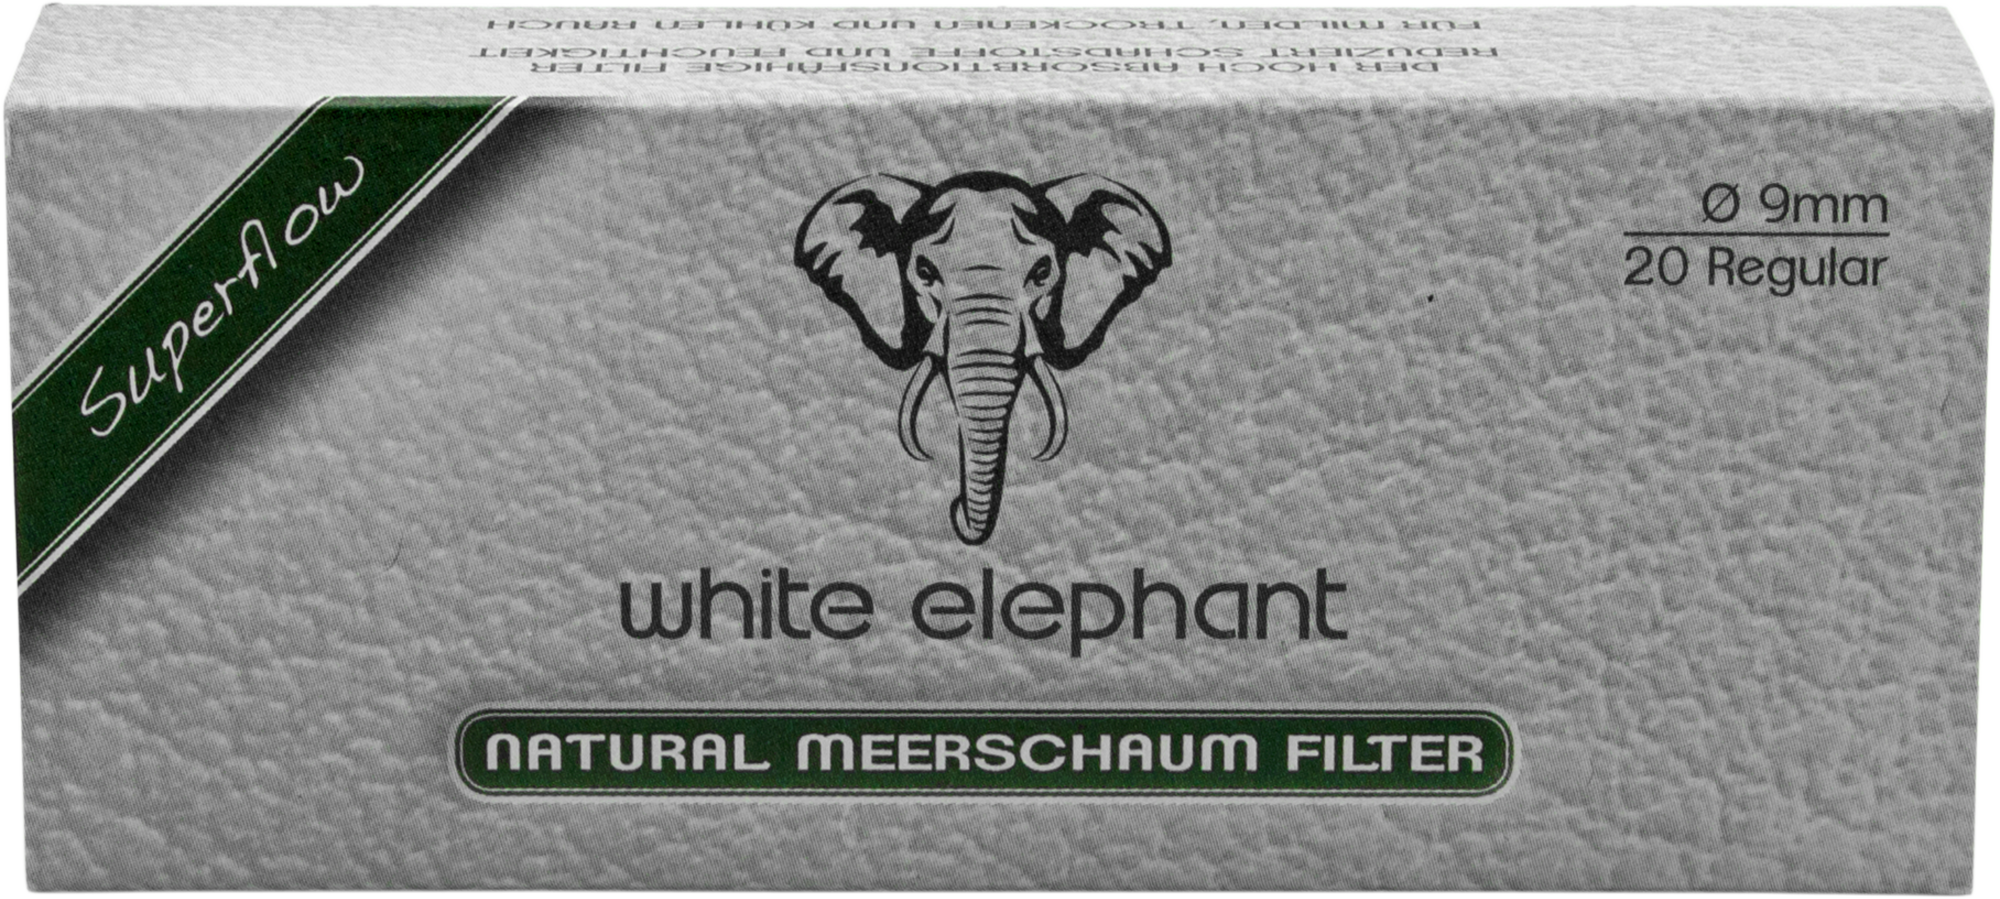 White Elephant 20 Natural Meerschaum Filter 9mm (15x)